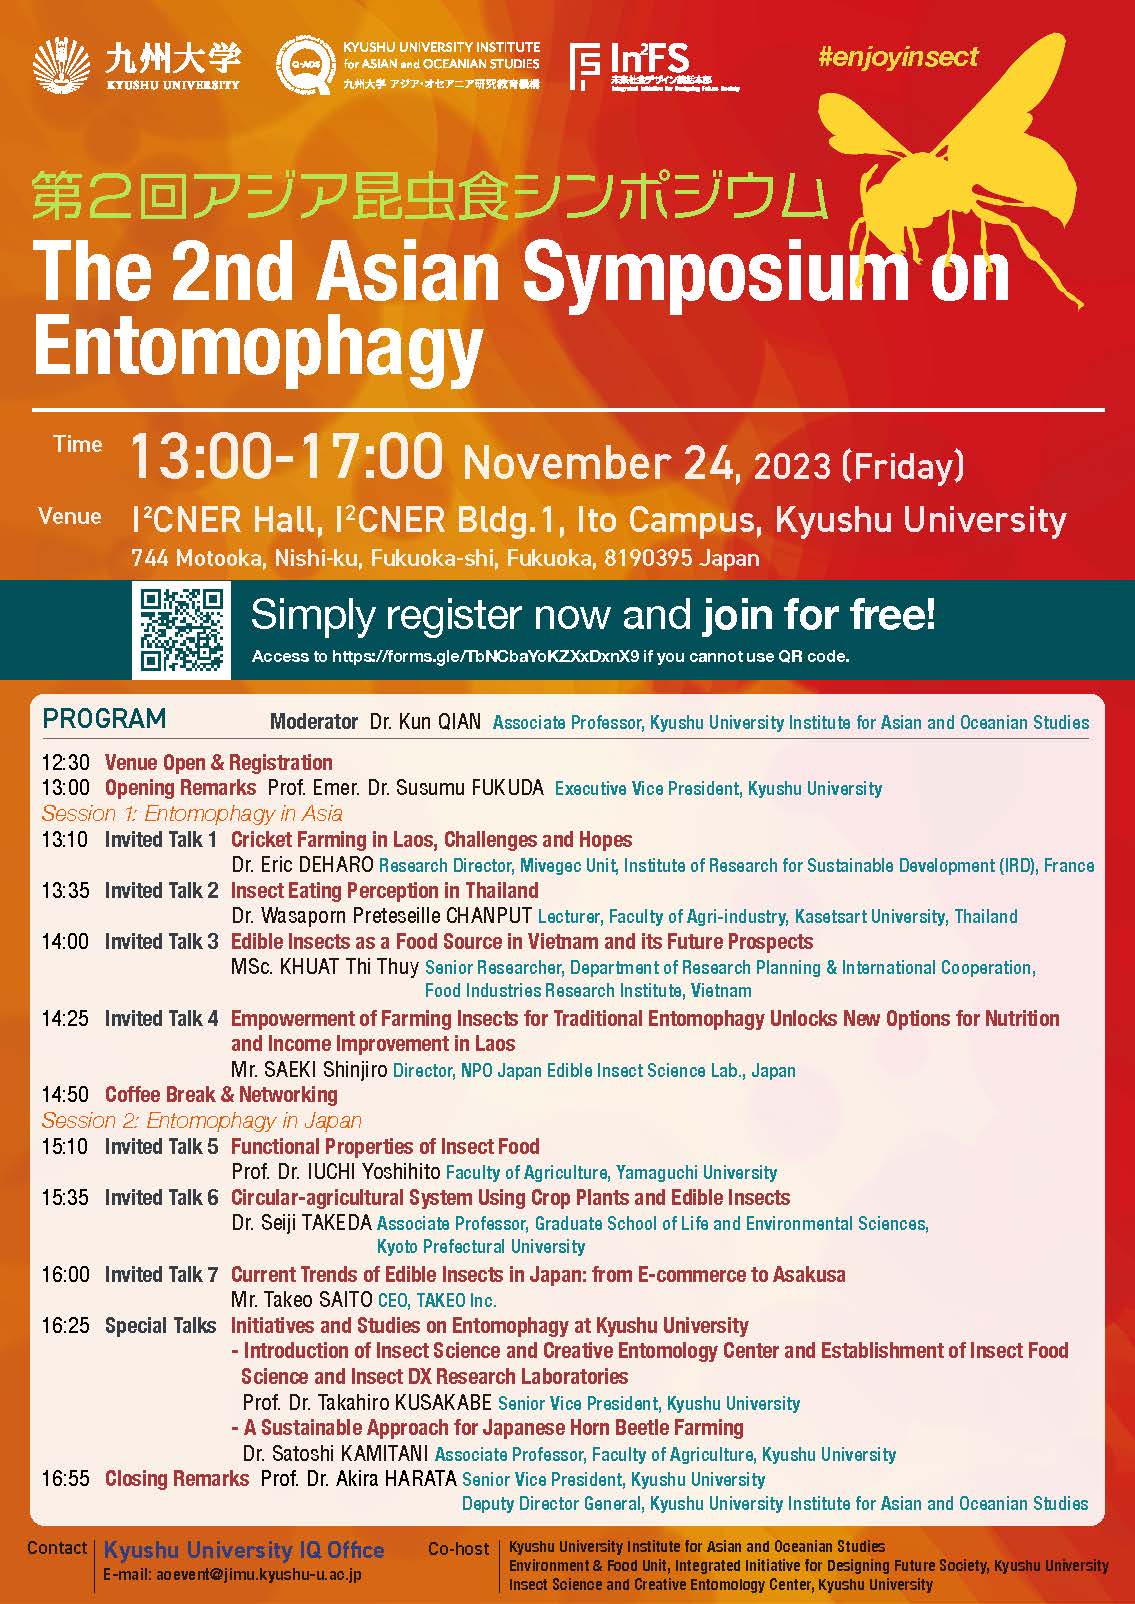 アイキャッチ画像：The 2nd Asian Symposium on Entomophagy